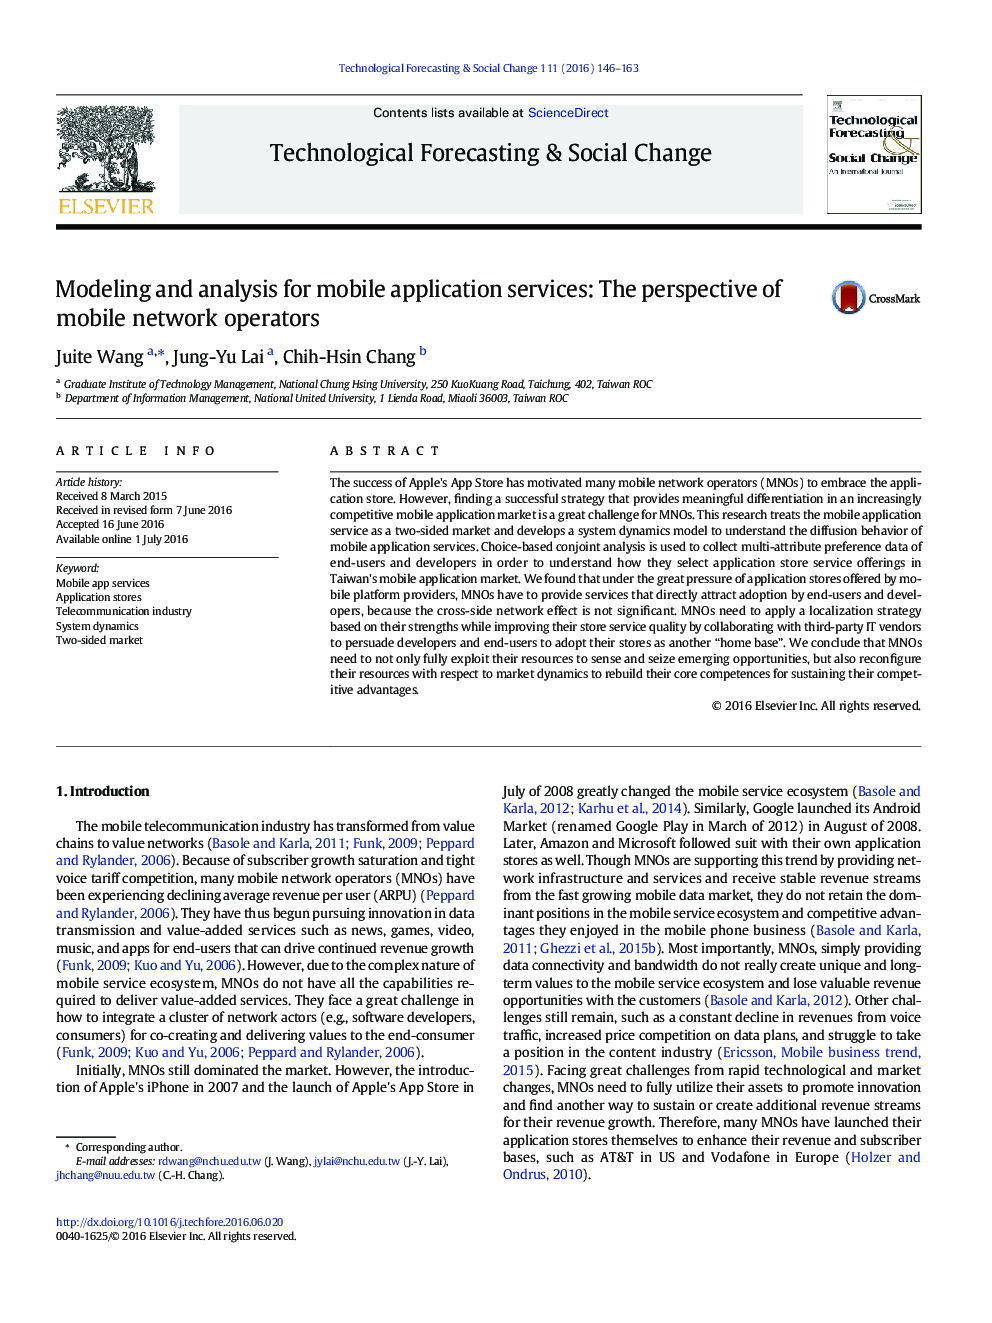 مدل سازی و تجزیه و تحلیل برای خدمات برنامه های تلفن همراه: چشم انداز اپراتورهای شبکه تلفن همراه 